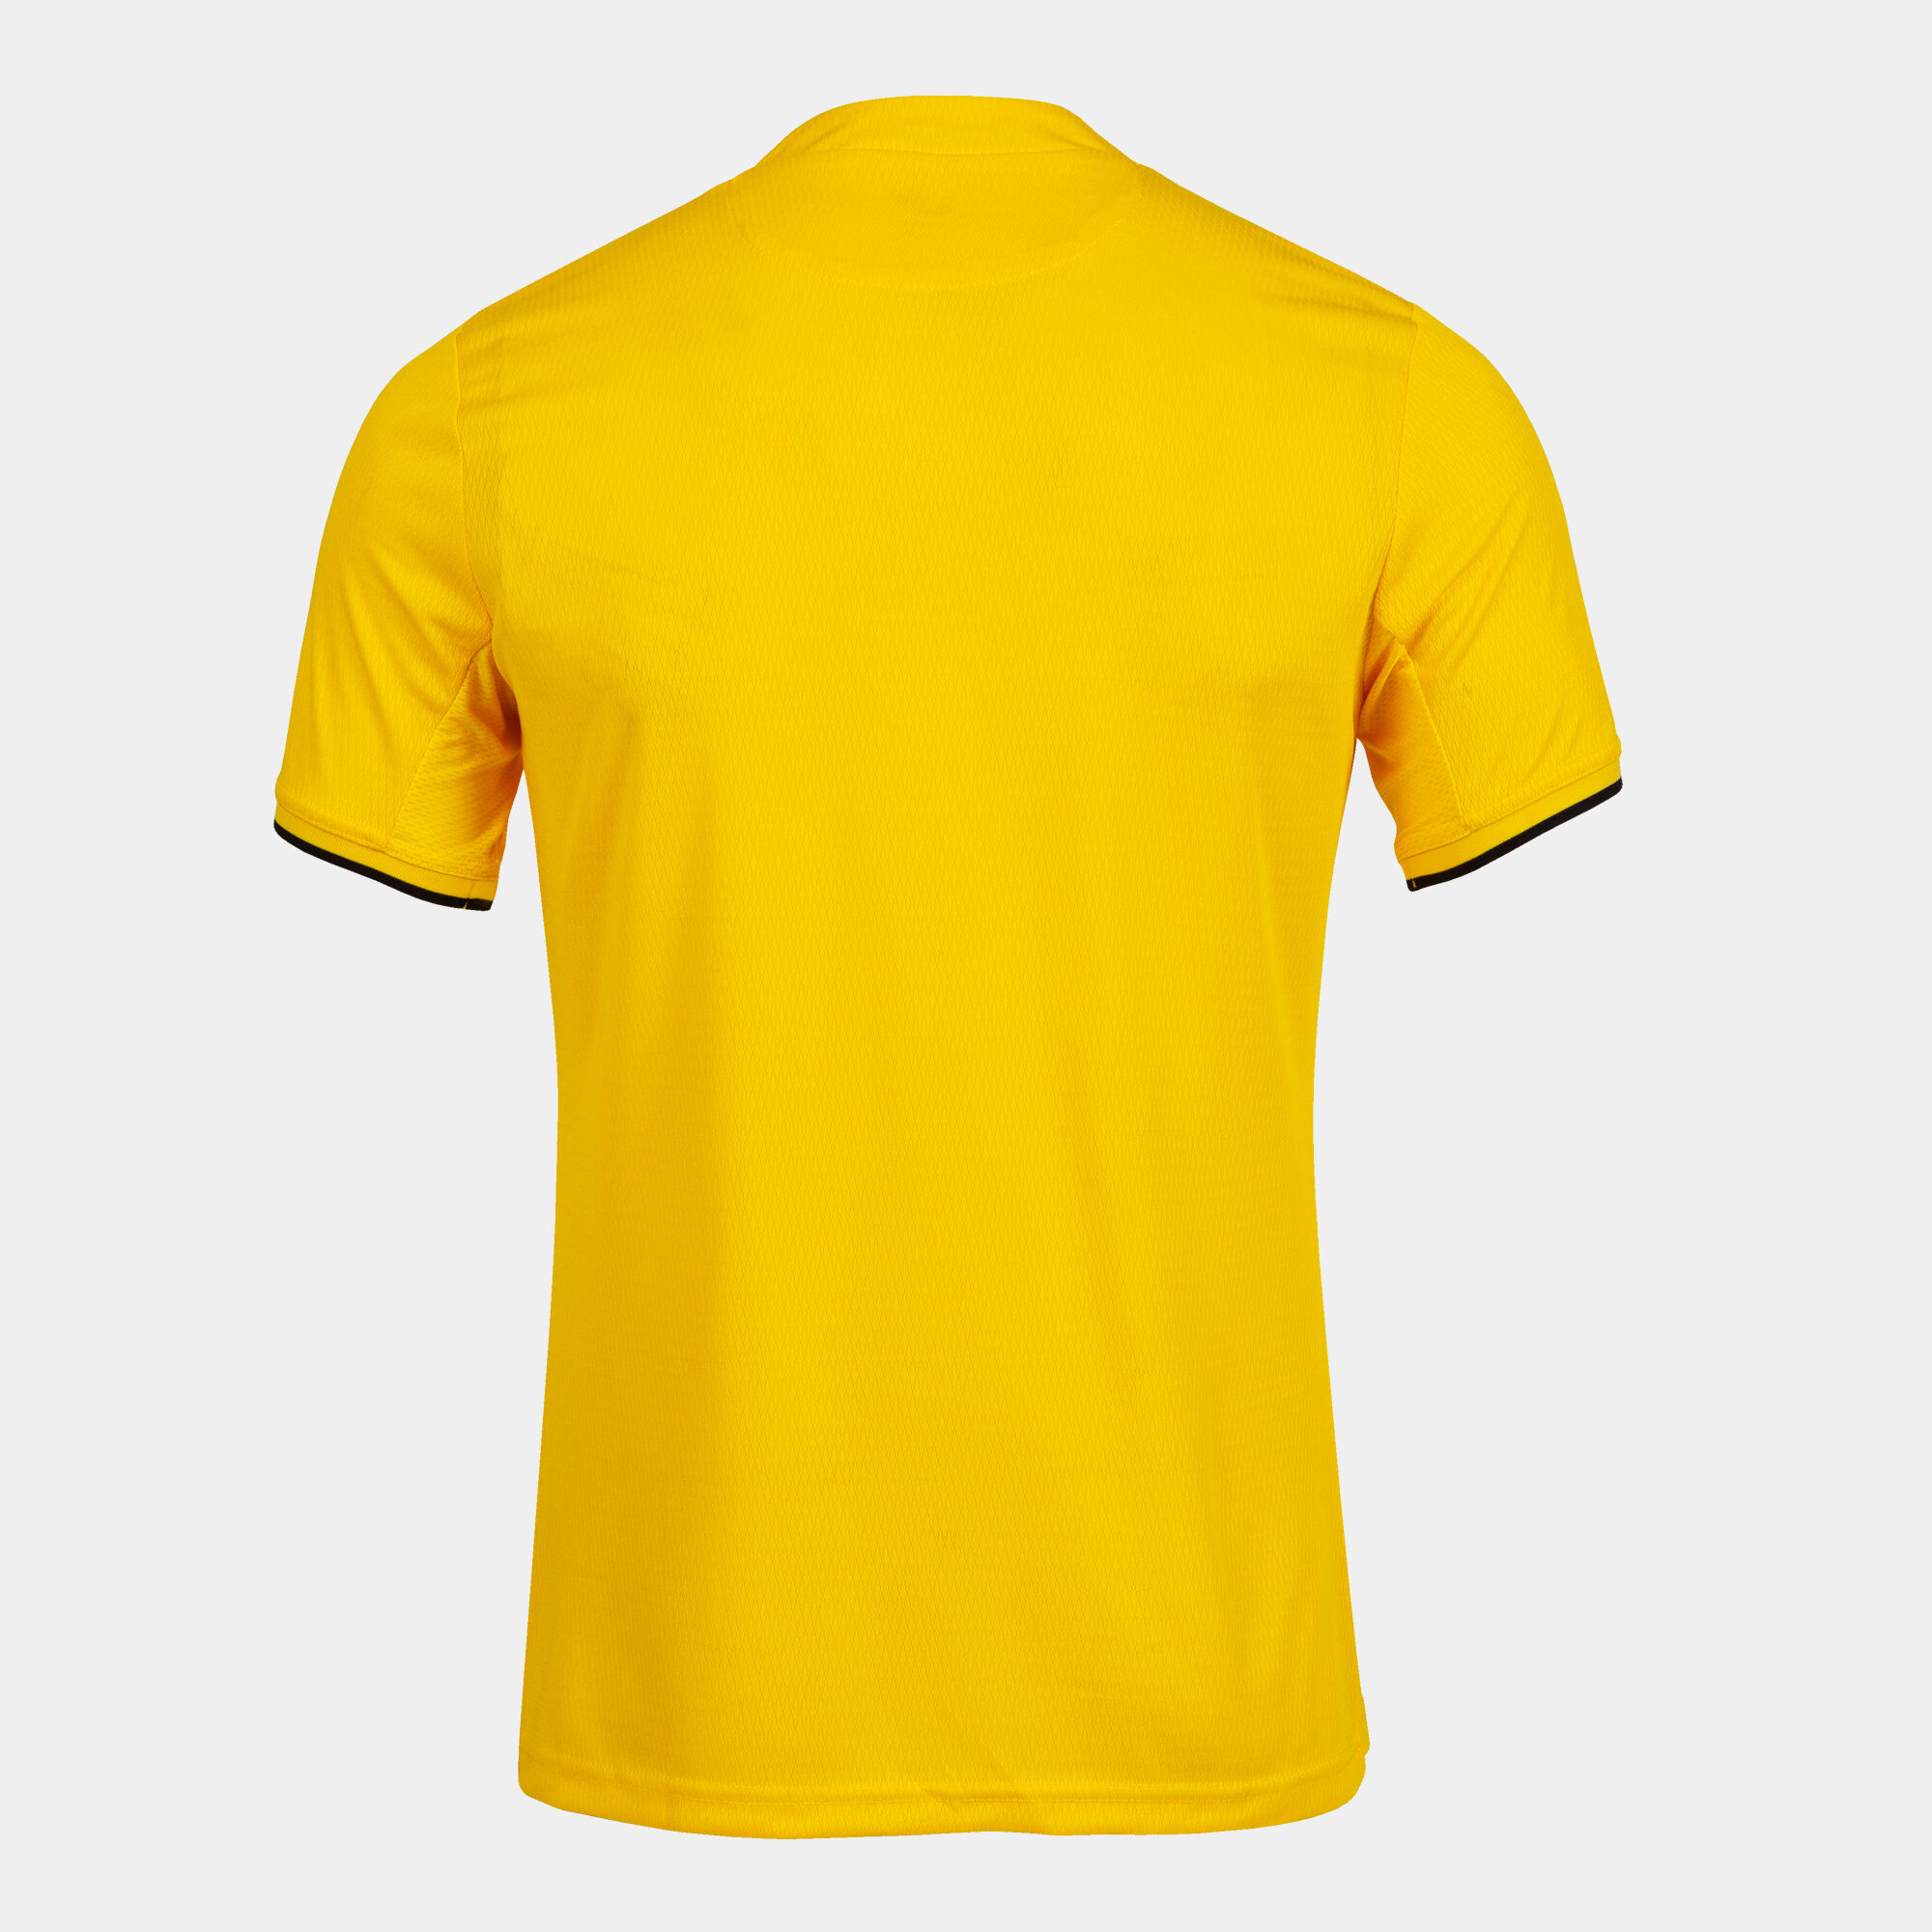 Camiseta manga corta hombre Toletum IV amarillo negro